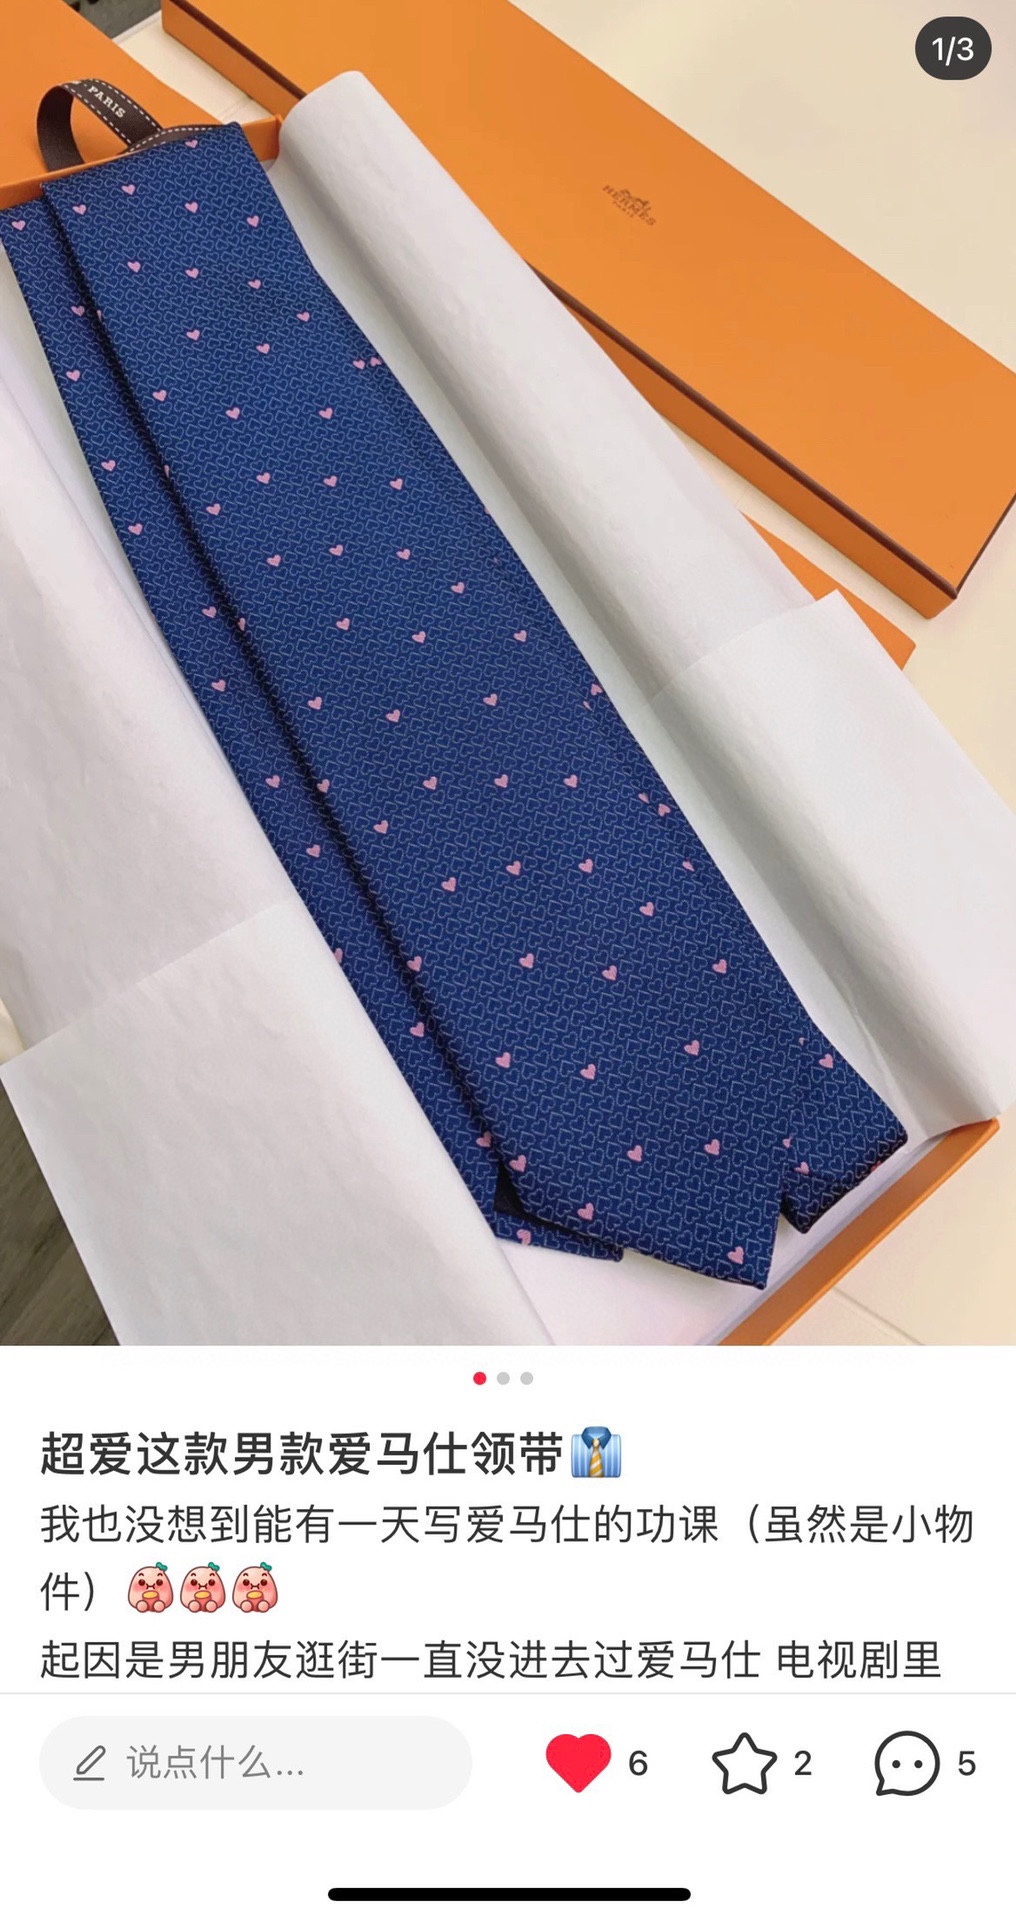 配包装爱马仕男女同款爱心新款领带系列